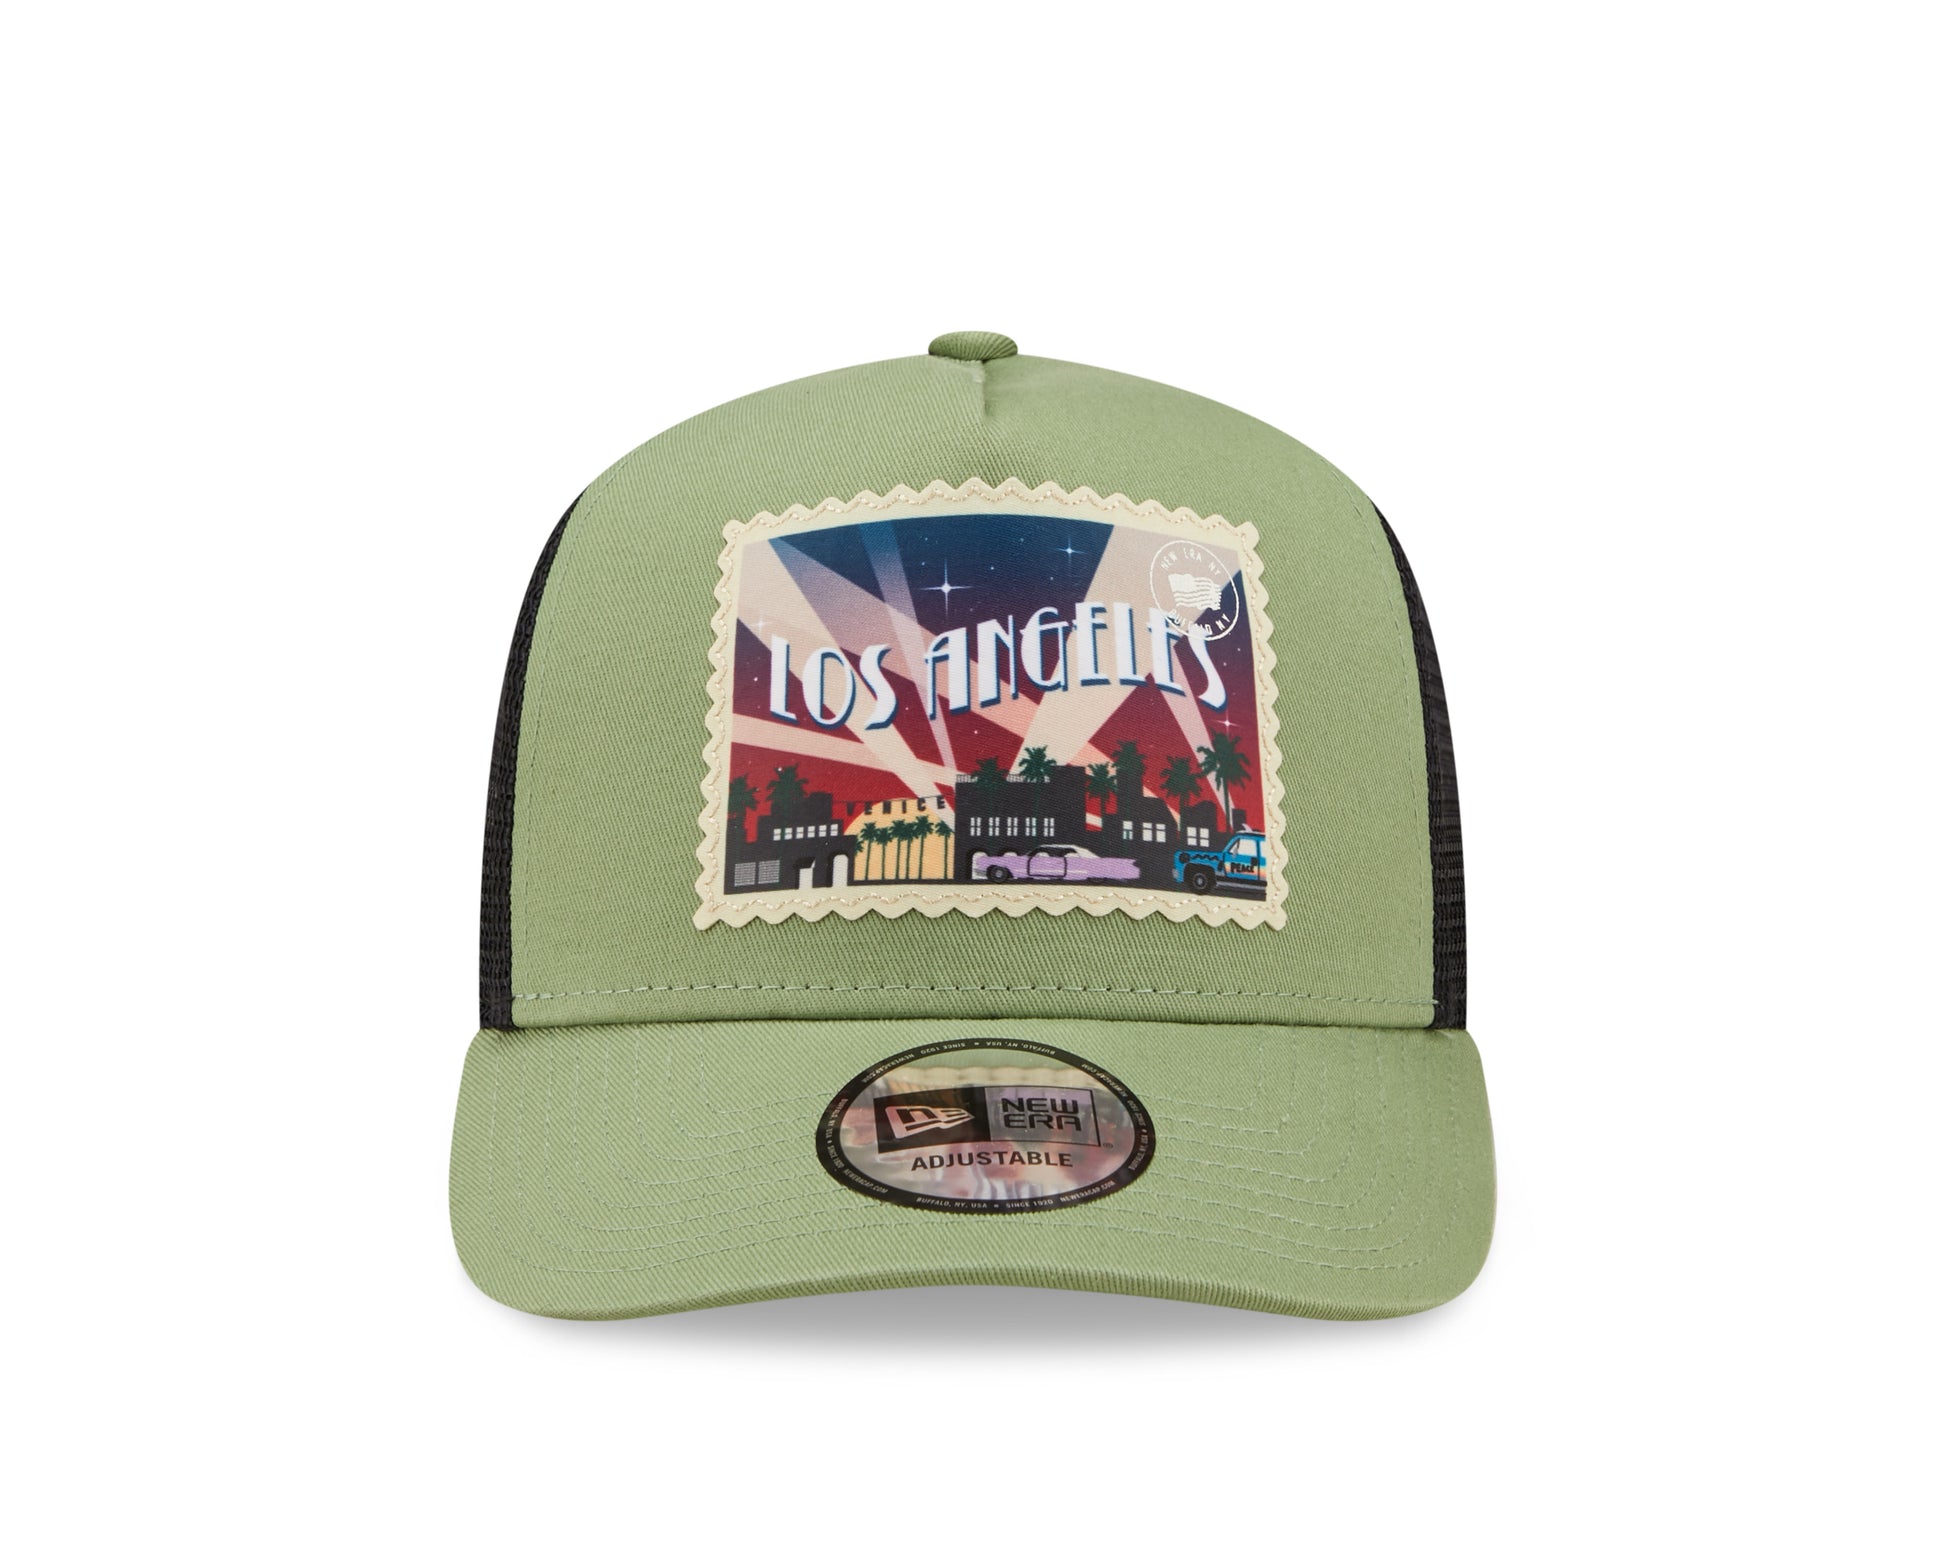 New Era Postcard Trucker Cap - Green - Headz Up 